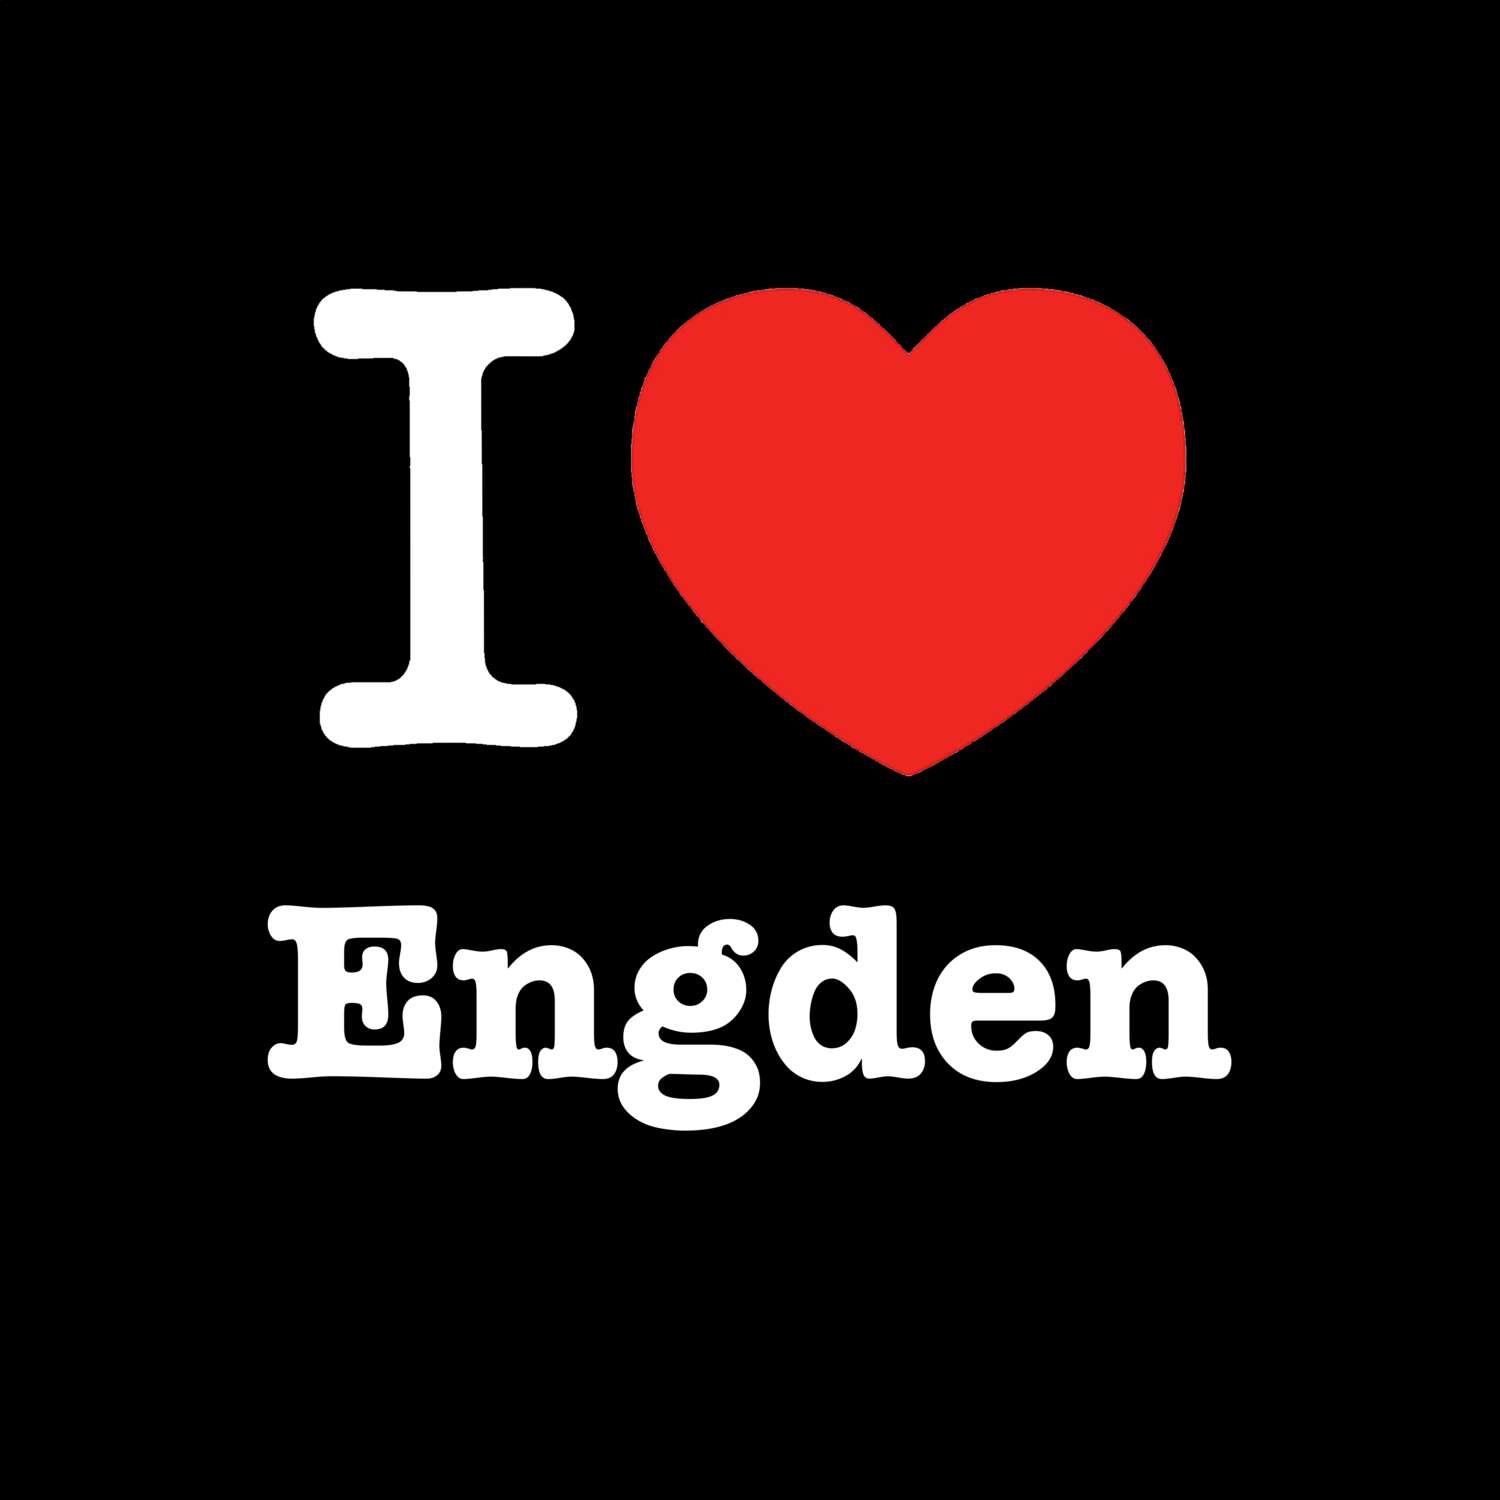 Engden T-Shirt »I love«